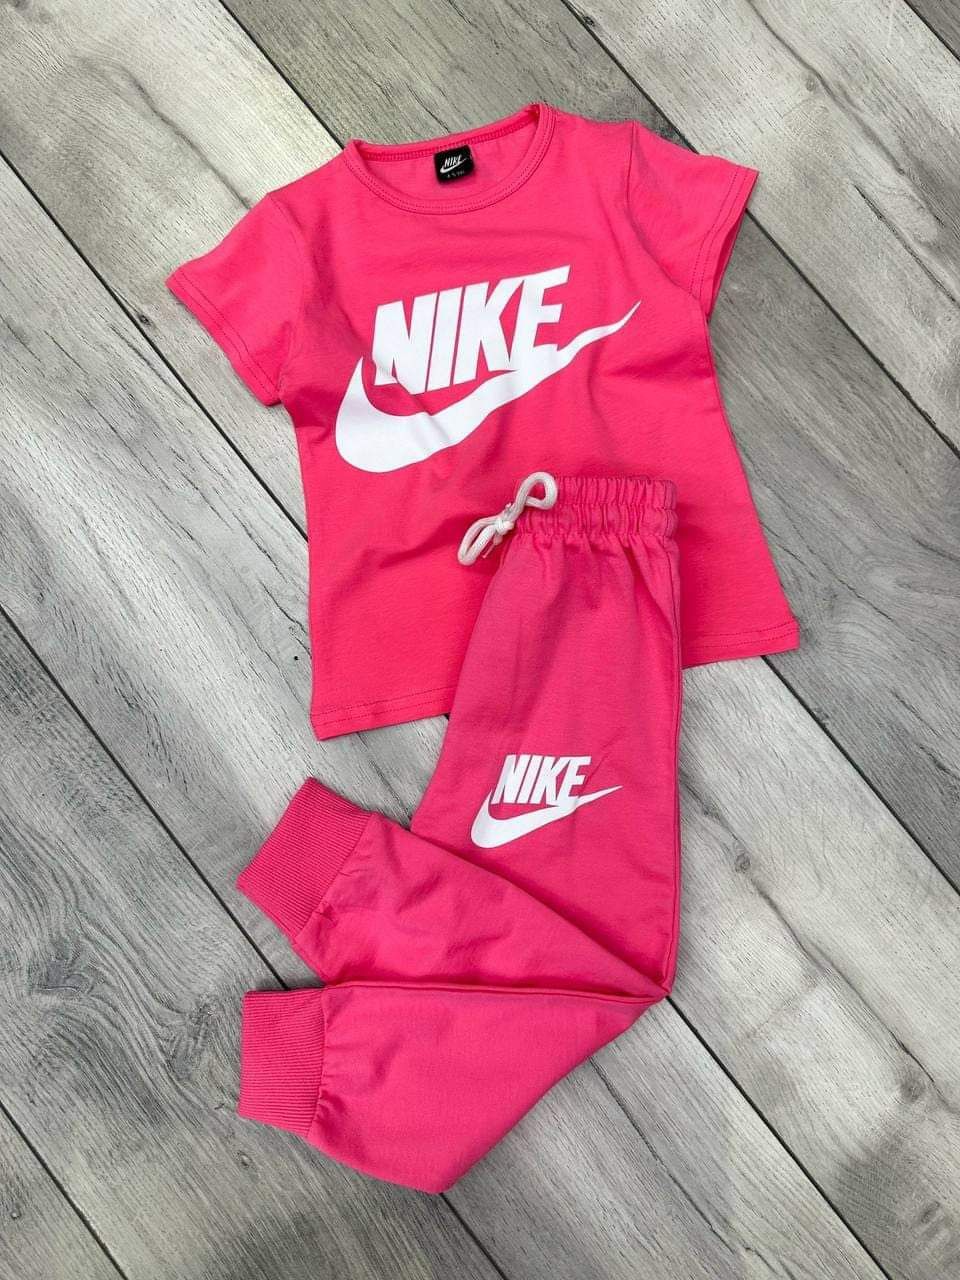 Komplet Nike różowy koszulka spodnie dresowe 122 128